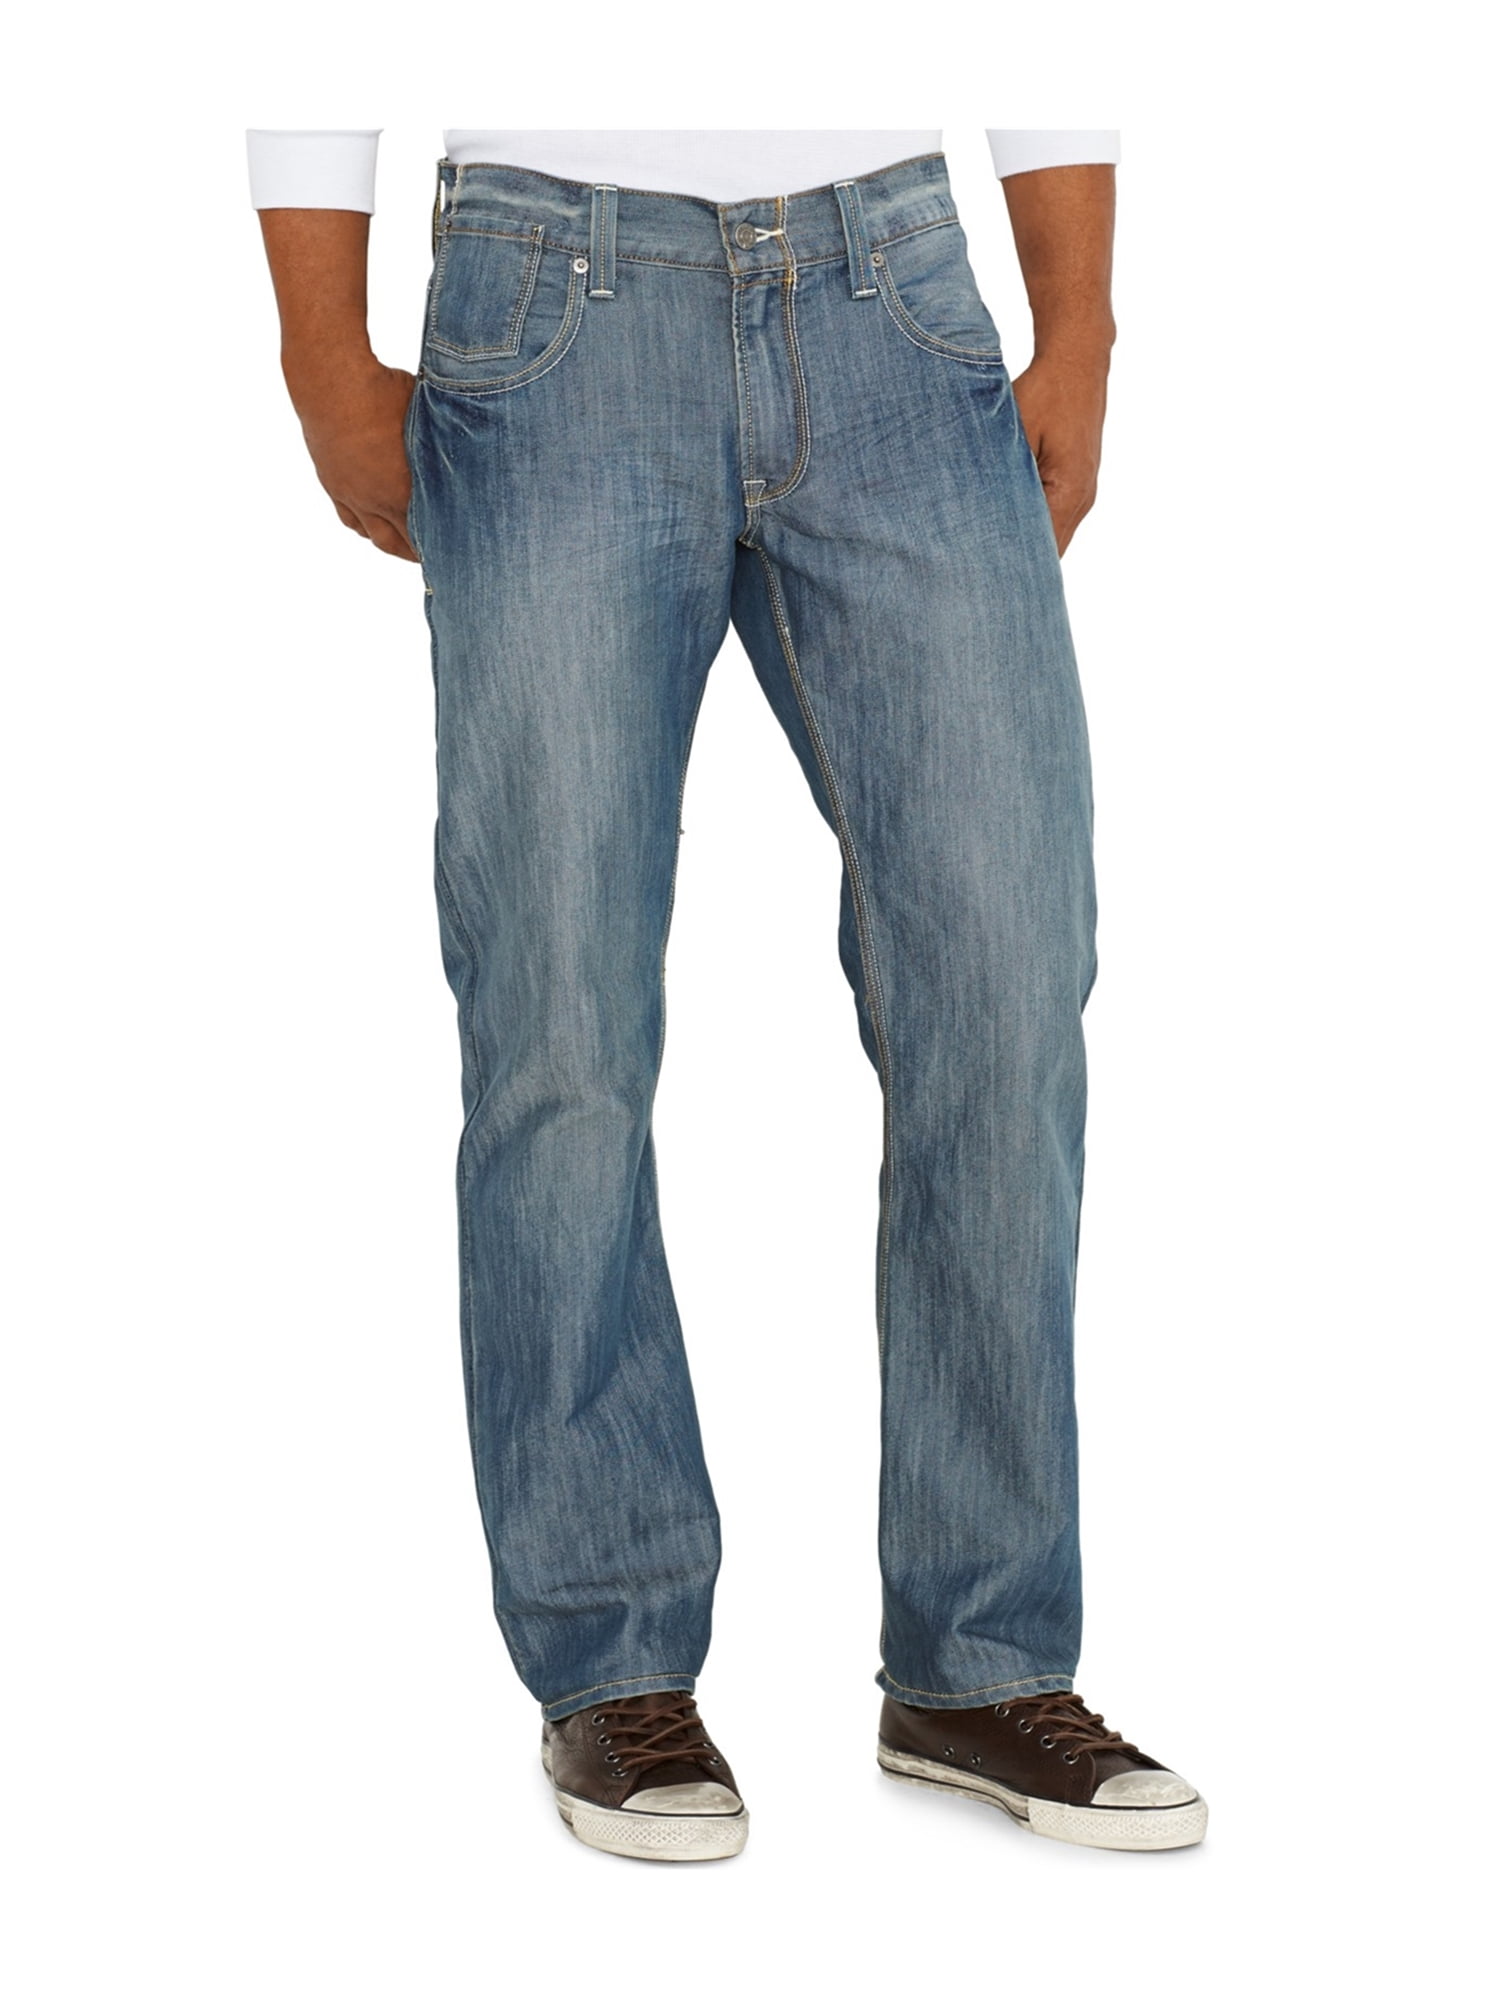 levis welder jeans